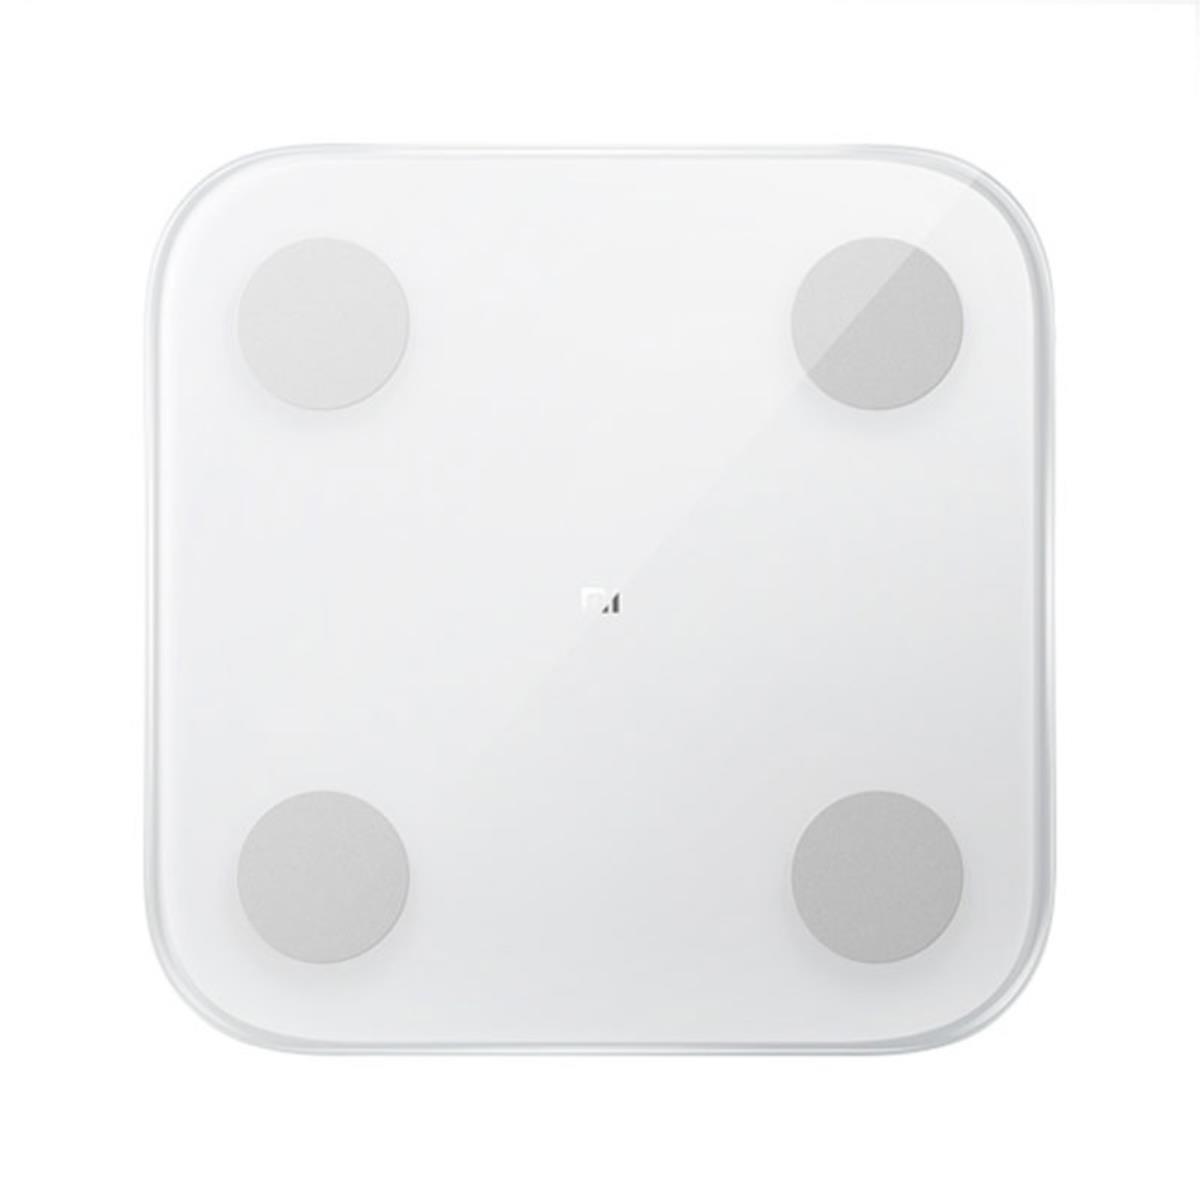 Scale Xiaomi Mi Body Composition Scale 2 White (NUN4048GL)